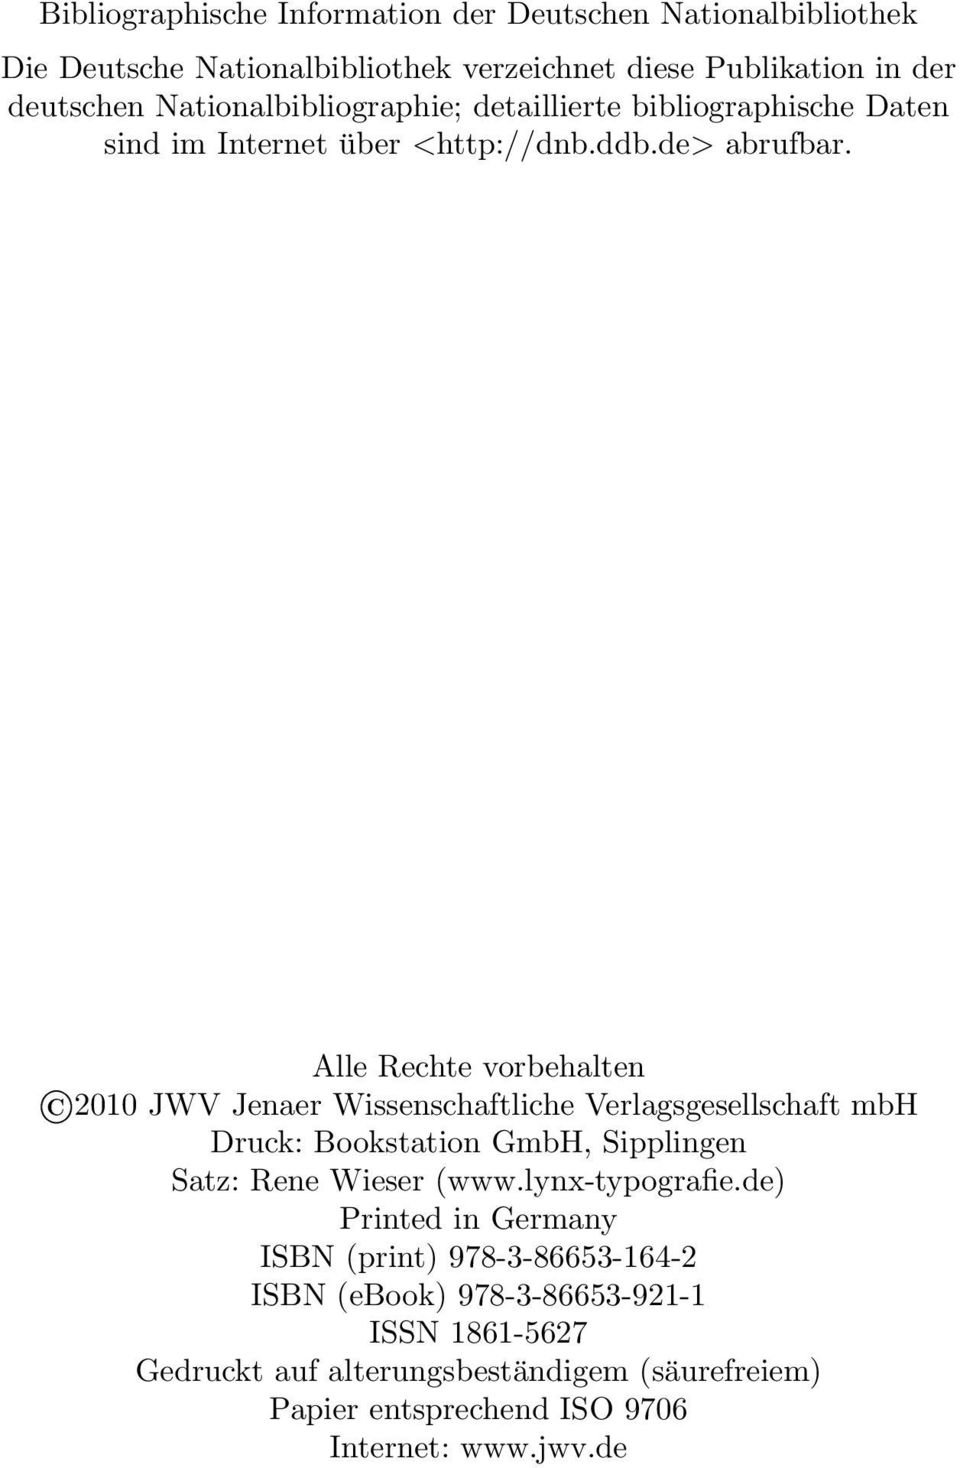 Alle Rechte vorbehalten 2010 JWV Jenaer Wissenschaftliche Verlagsgesellschaft mbh Druck: Bookstation GmbH, Sipplingen Satz: Rene Wieser (www.